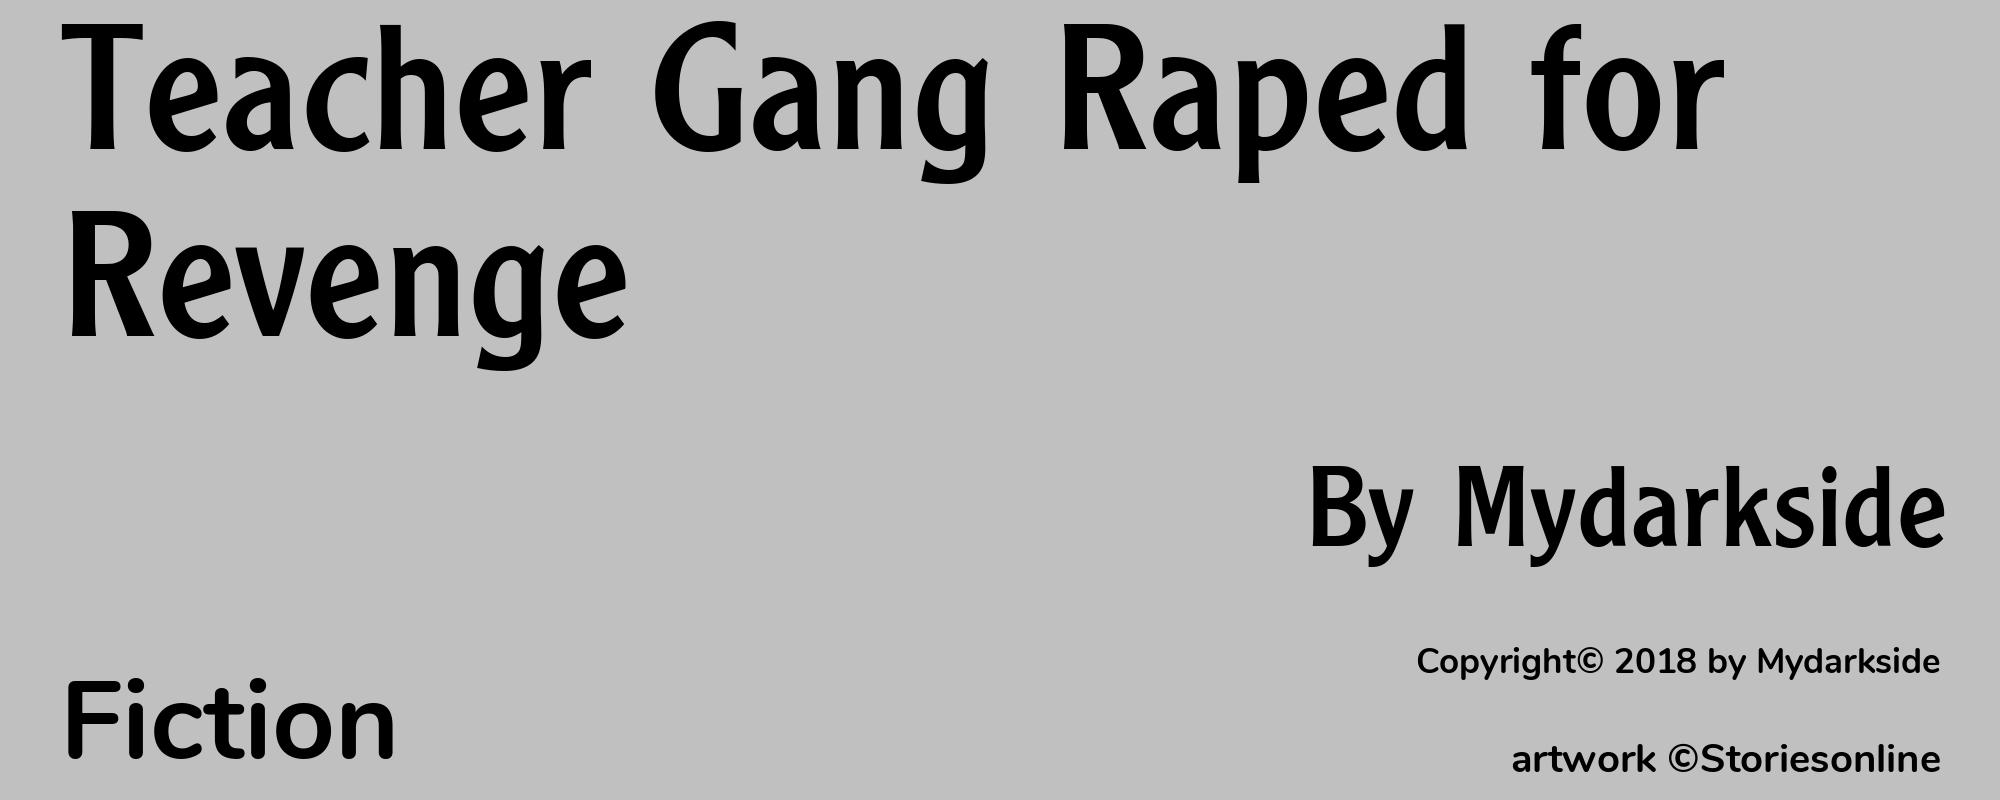 Teacher Gang Raped for Revenge - Cover